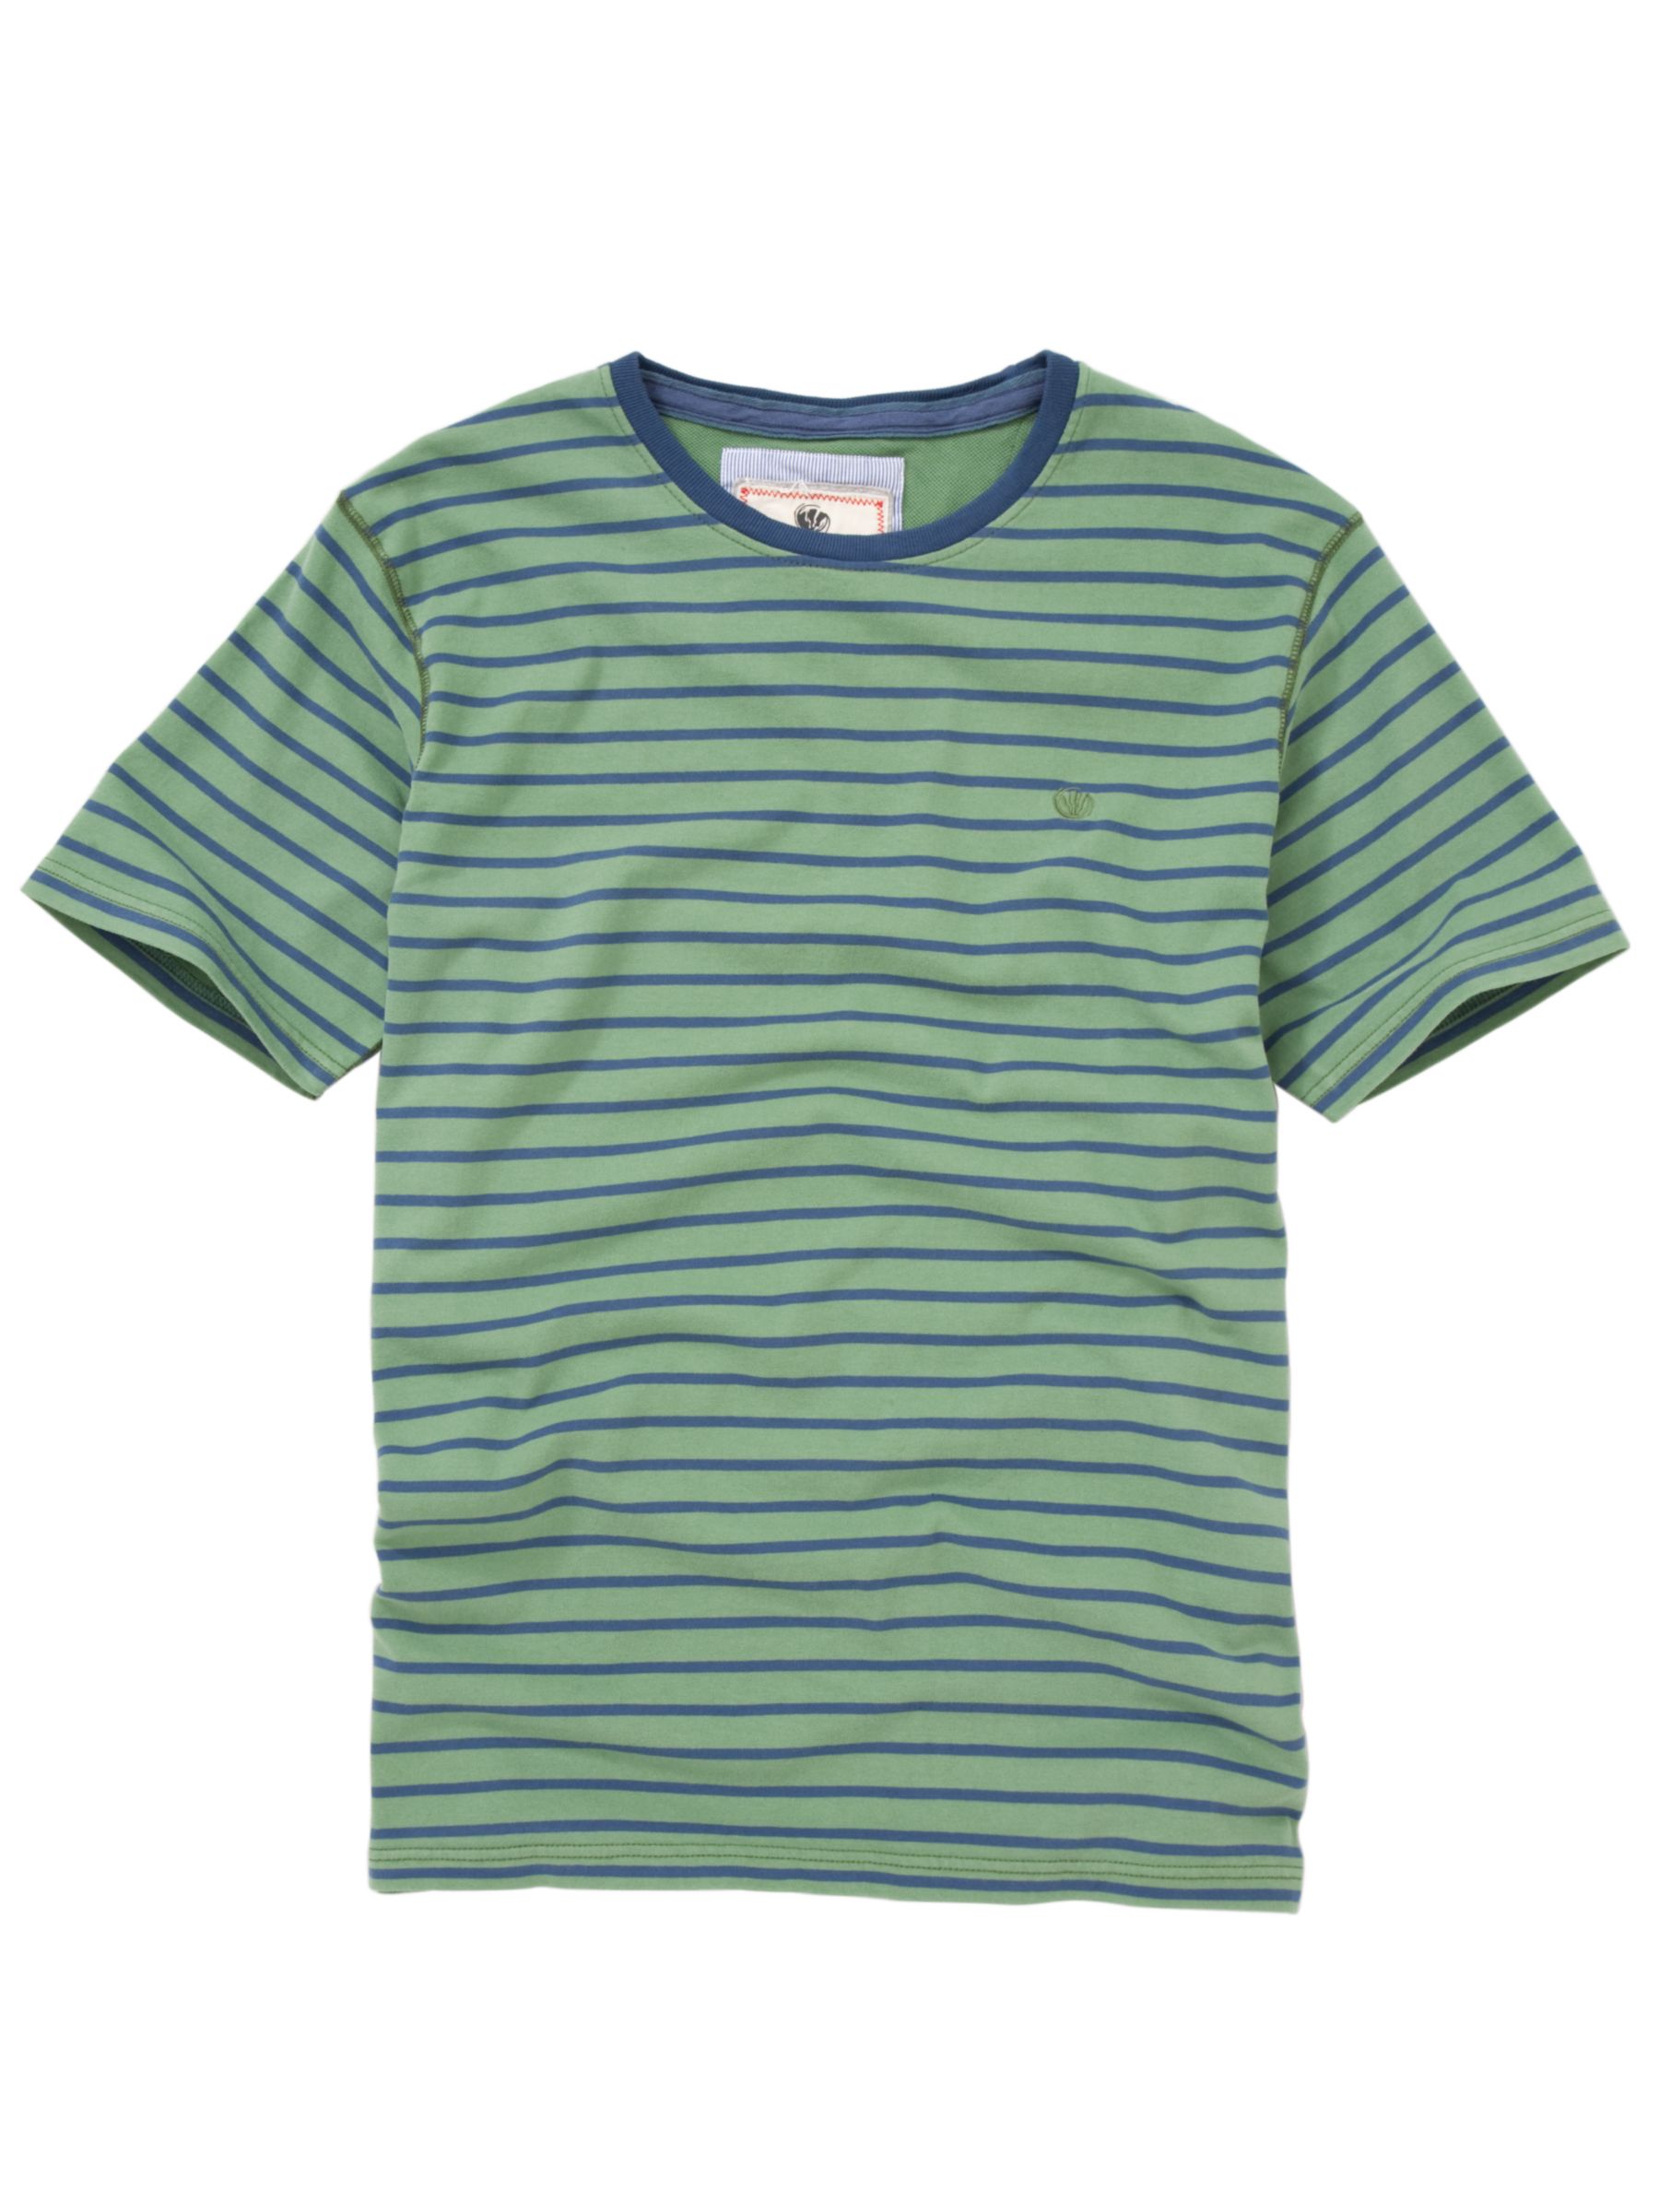 Fat Face Original Stripe Short Sleeve T-Shirt,